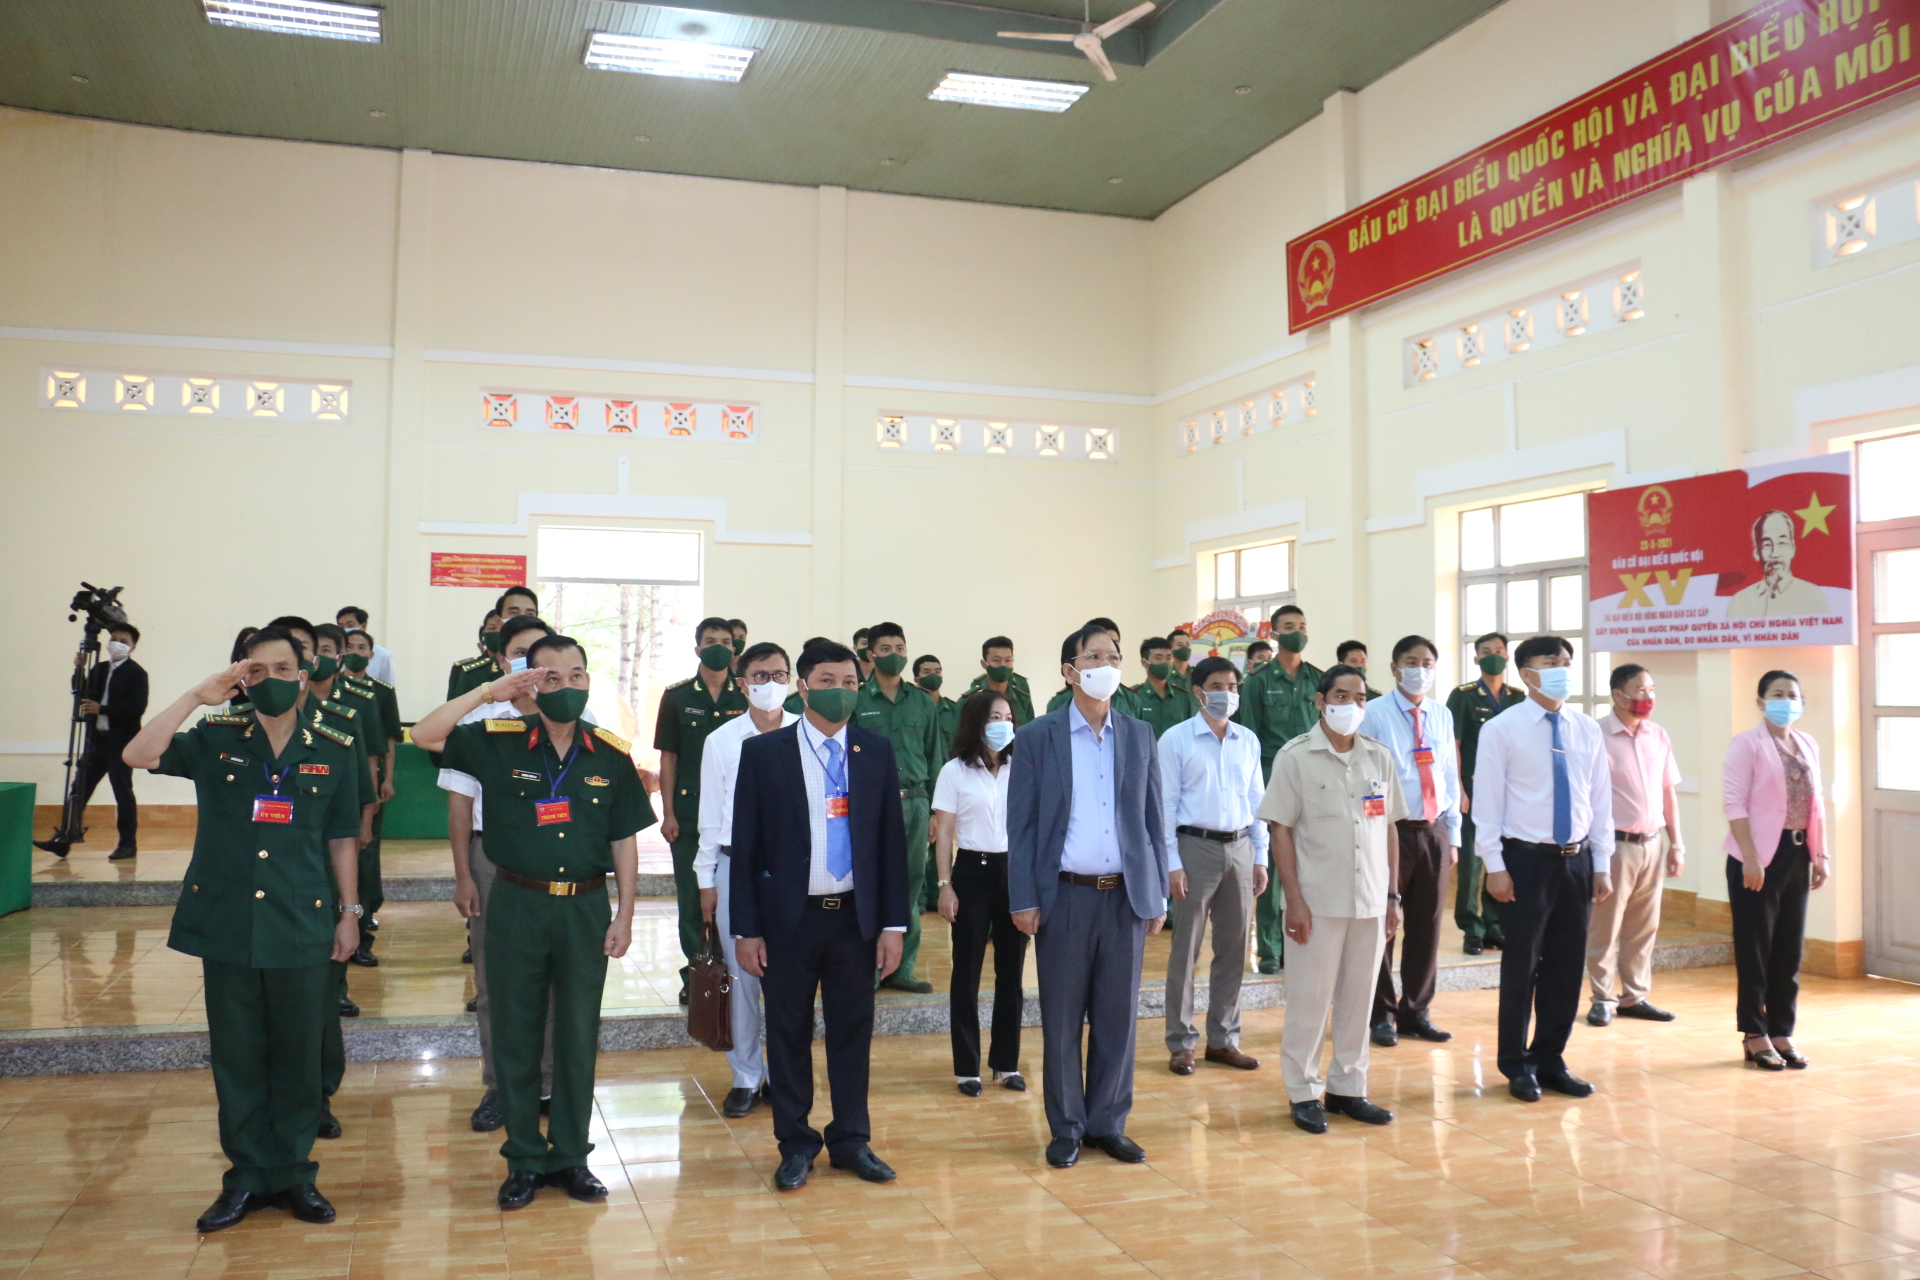 Đắk Nông: Bộ đội Biên phòng vùng biên đảm bảo an toàn khi bầu cử sớm - Ảnh 5.